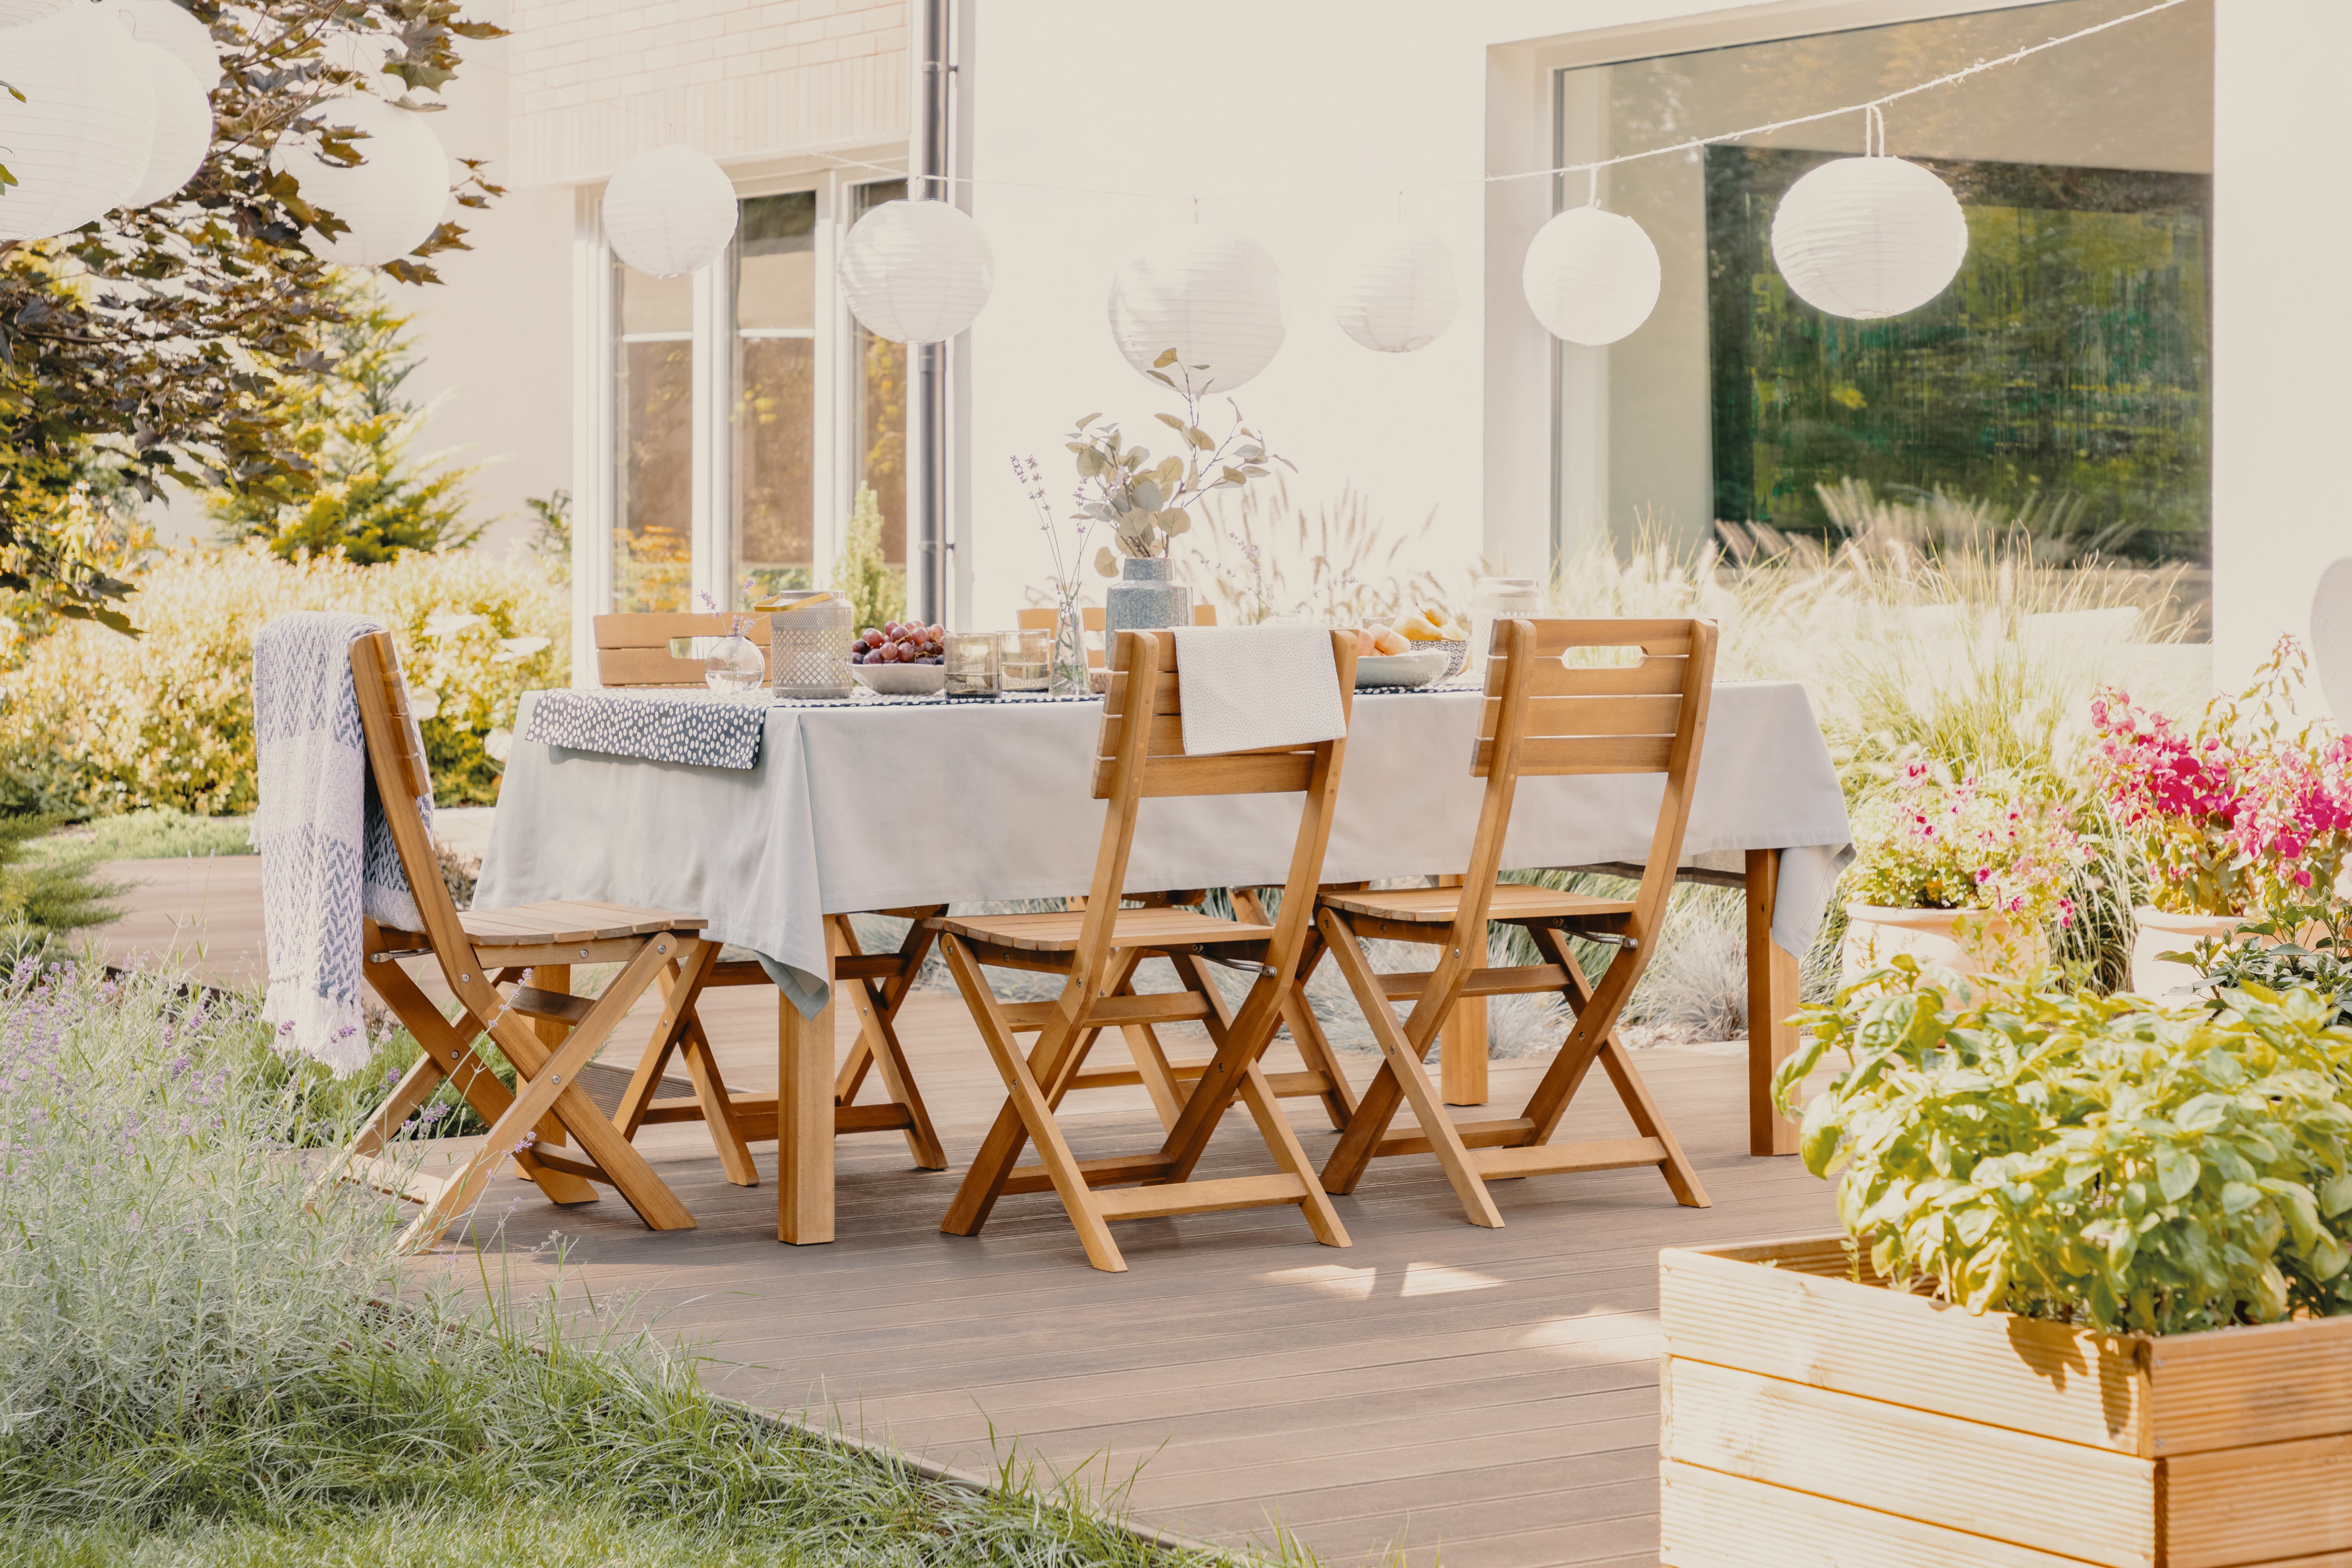 Zahradní nábytek sluší nejen vaší zahradě, ale i terase a balkónu